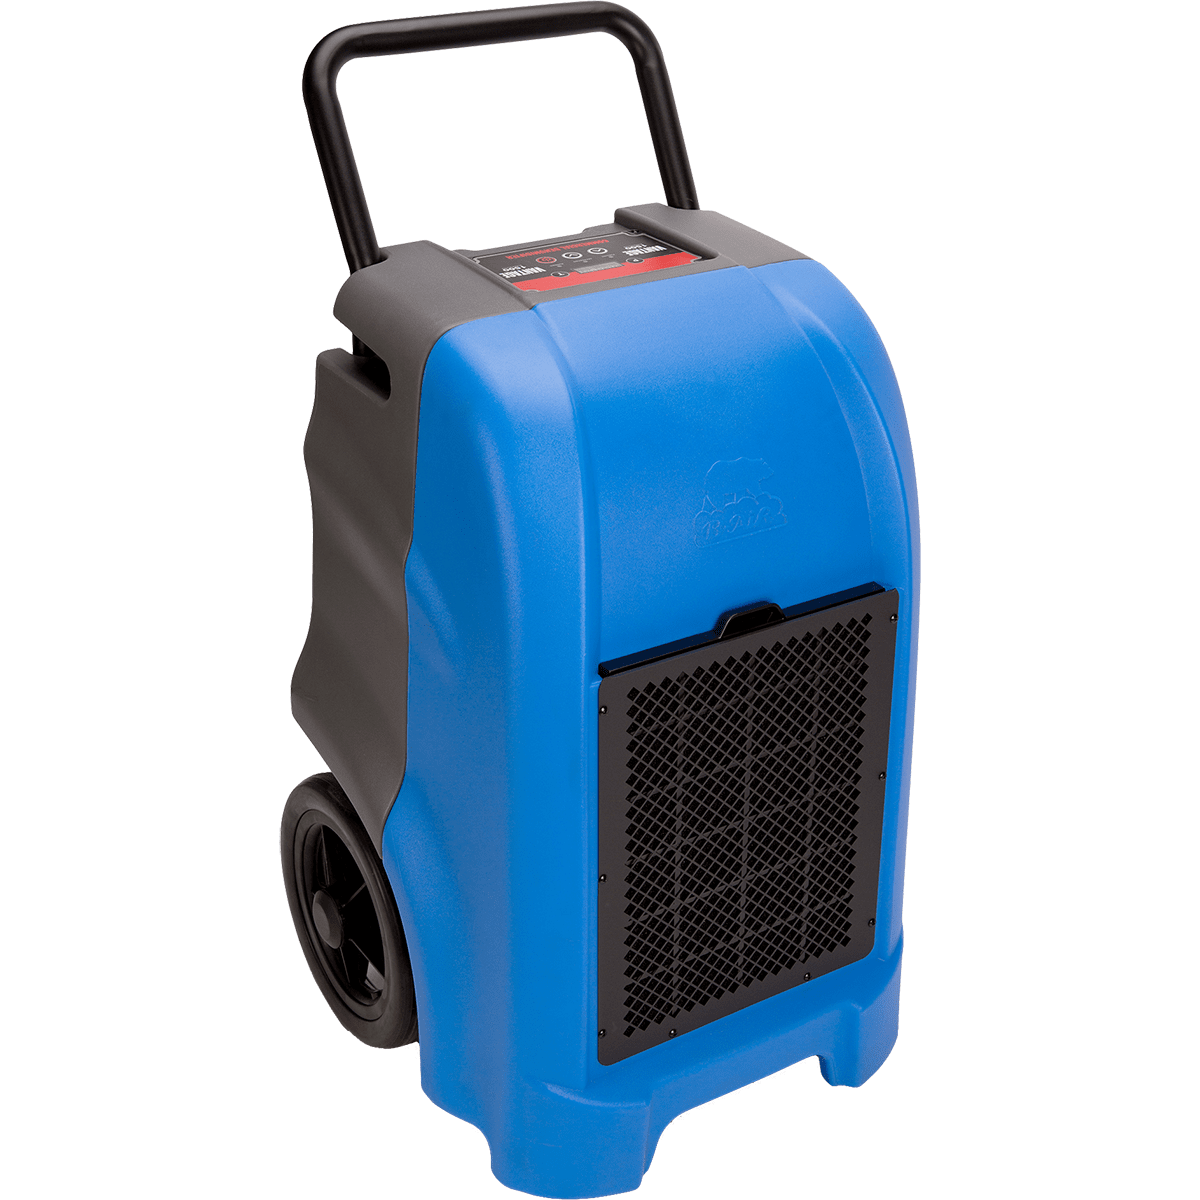 B-air Vg1500 Vantage Dehumidifier - Blue